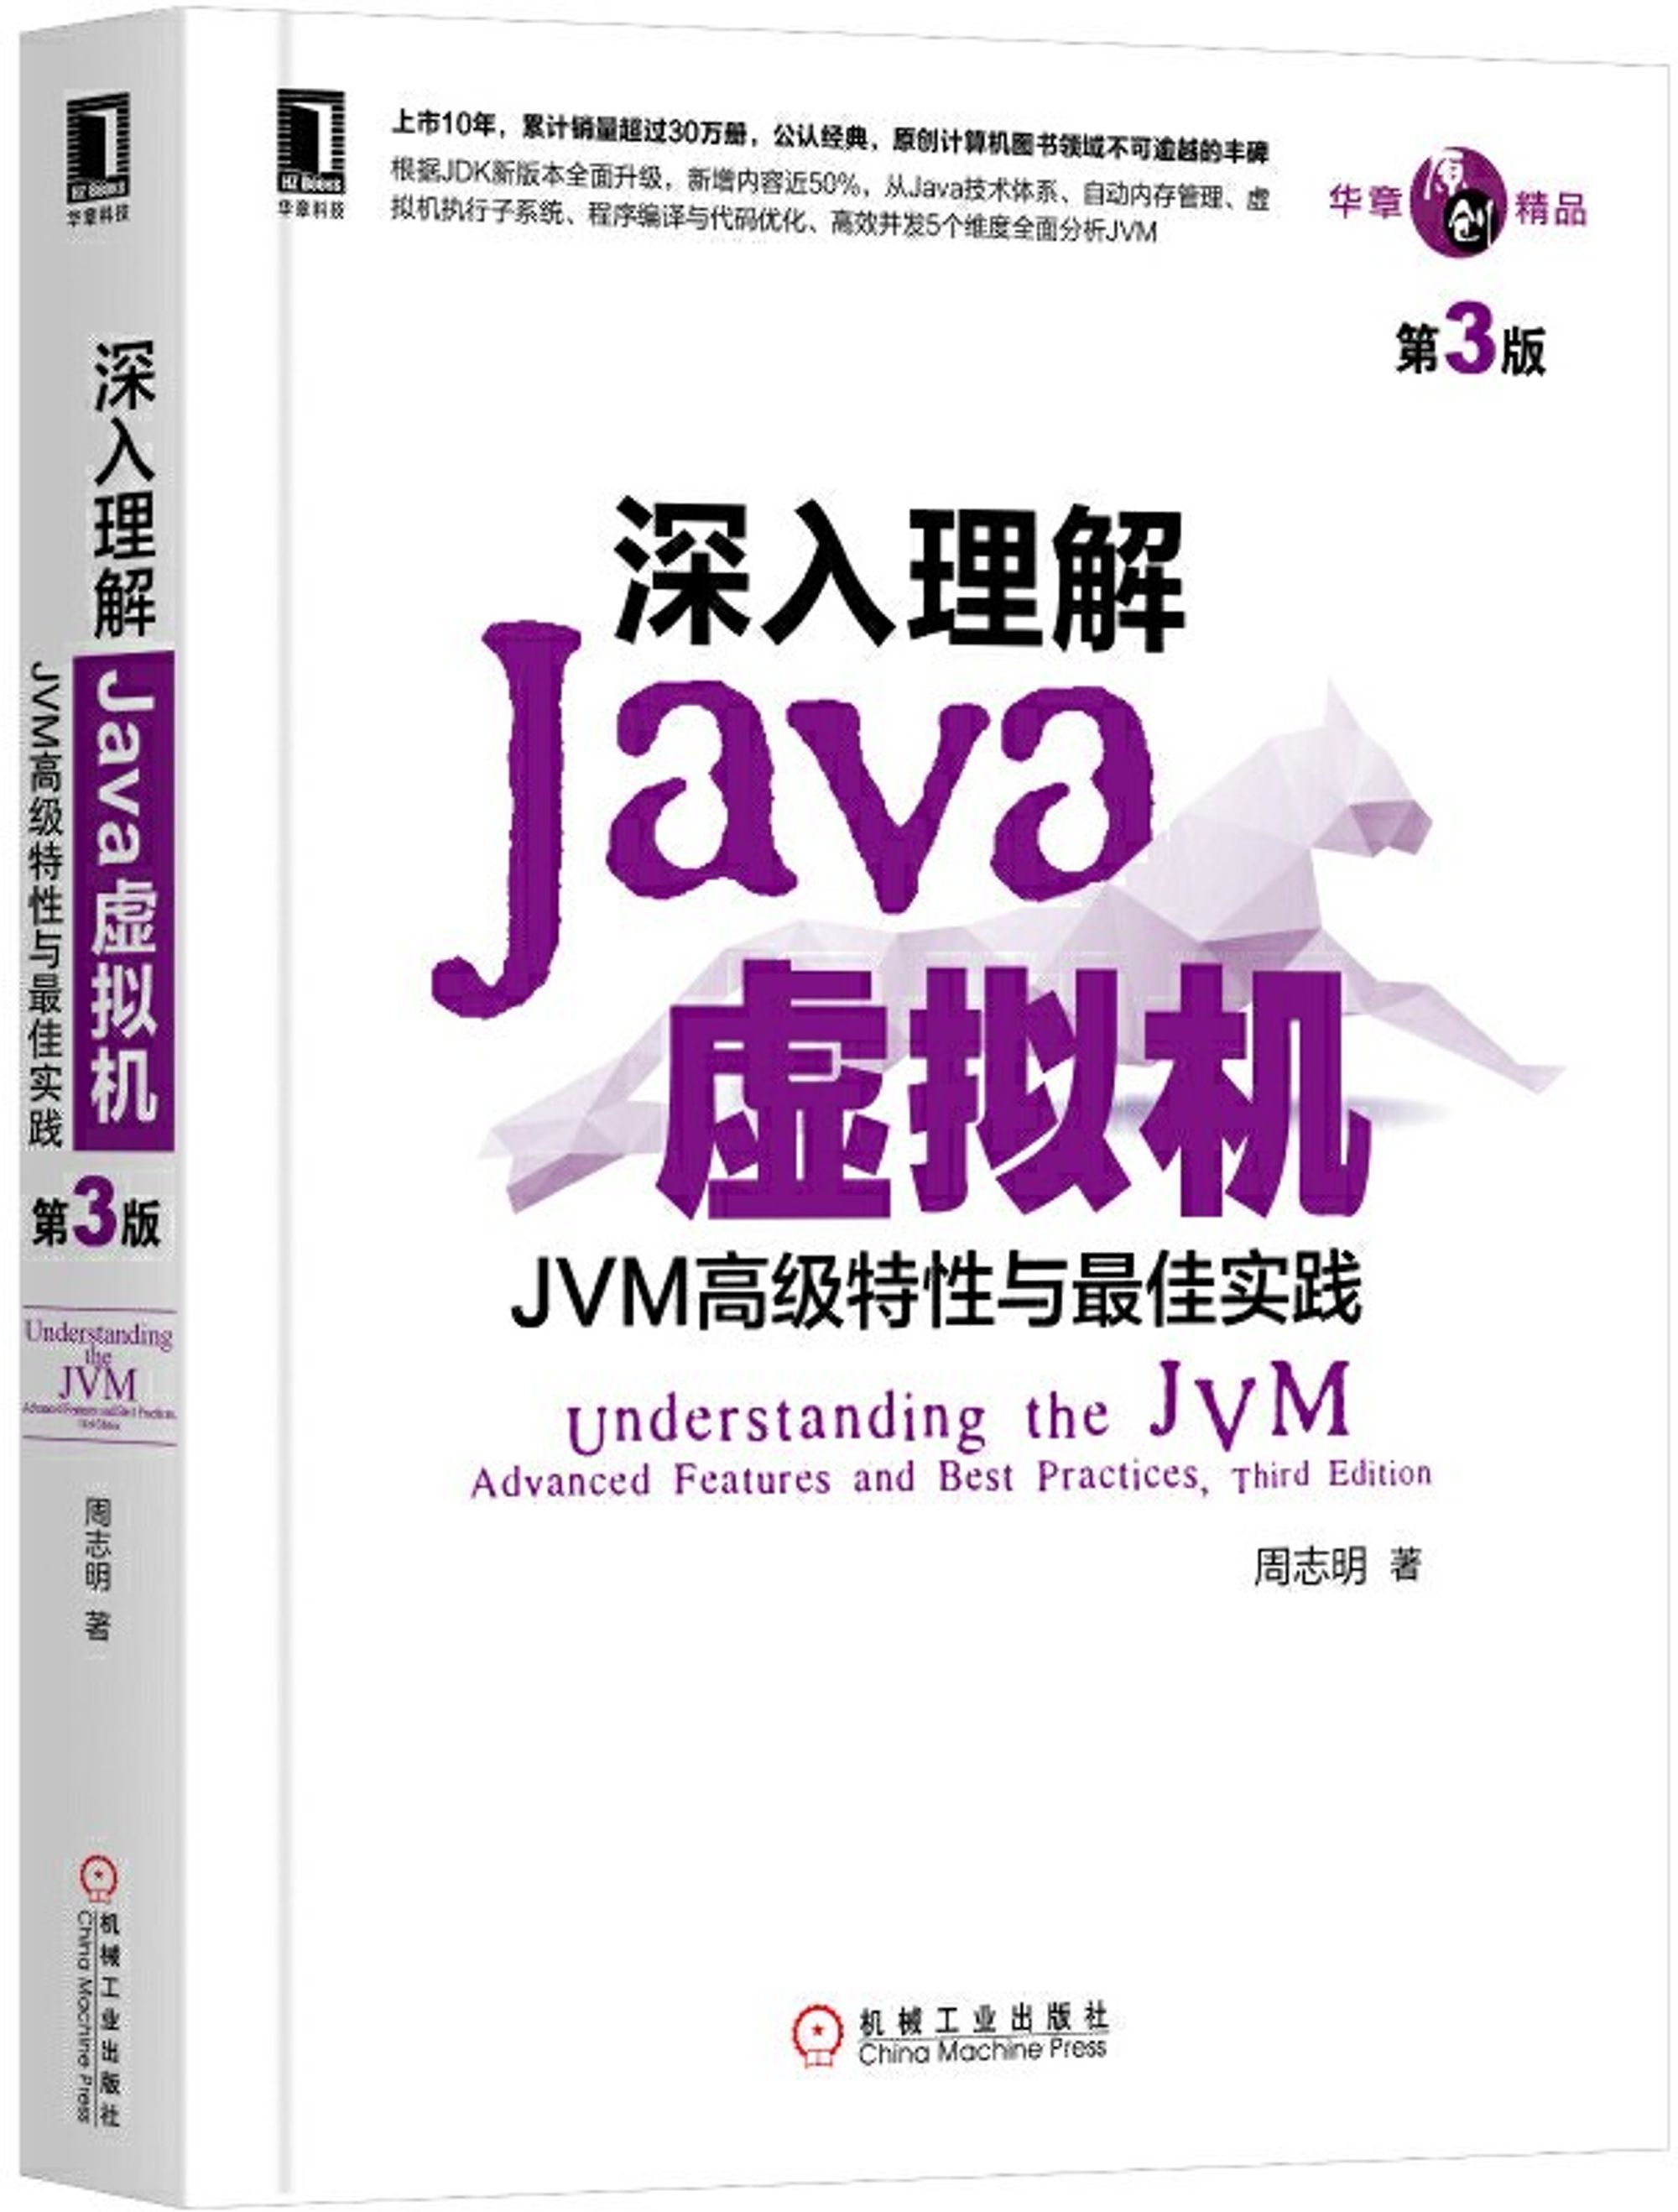 [读书笔记] 深入理解 Java 虚拟机